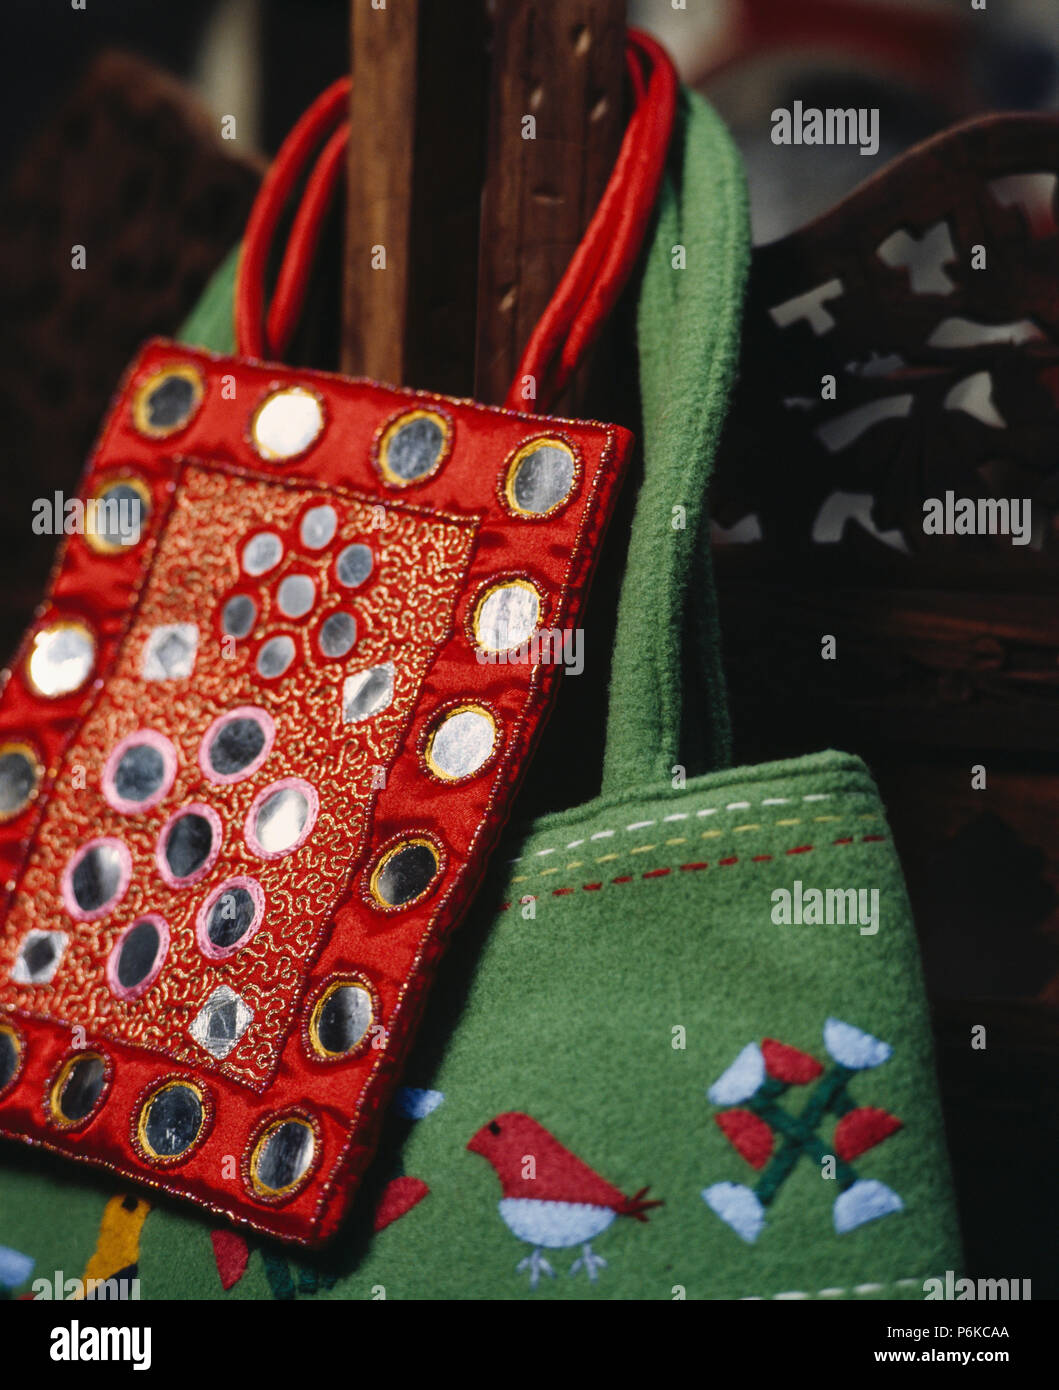 Miroir de sac à main rouge de style indien et sac en tissu vert Photo Stock  - Alamy